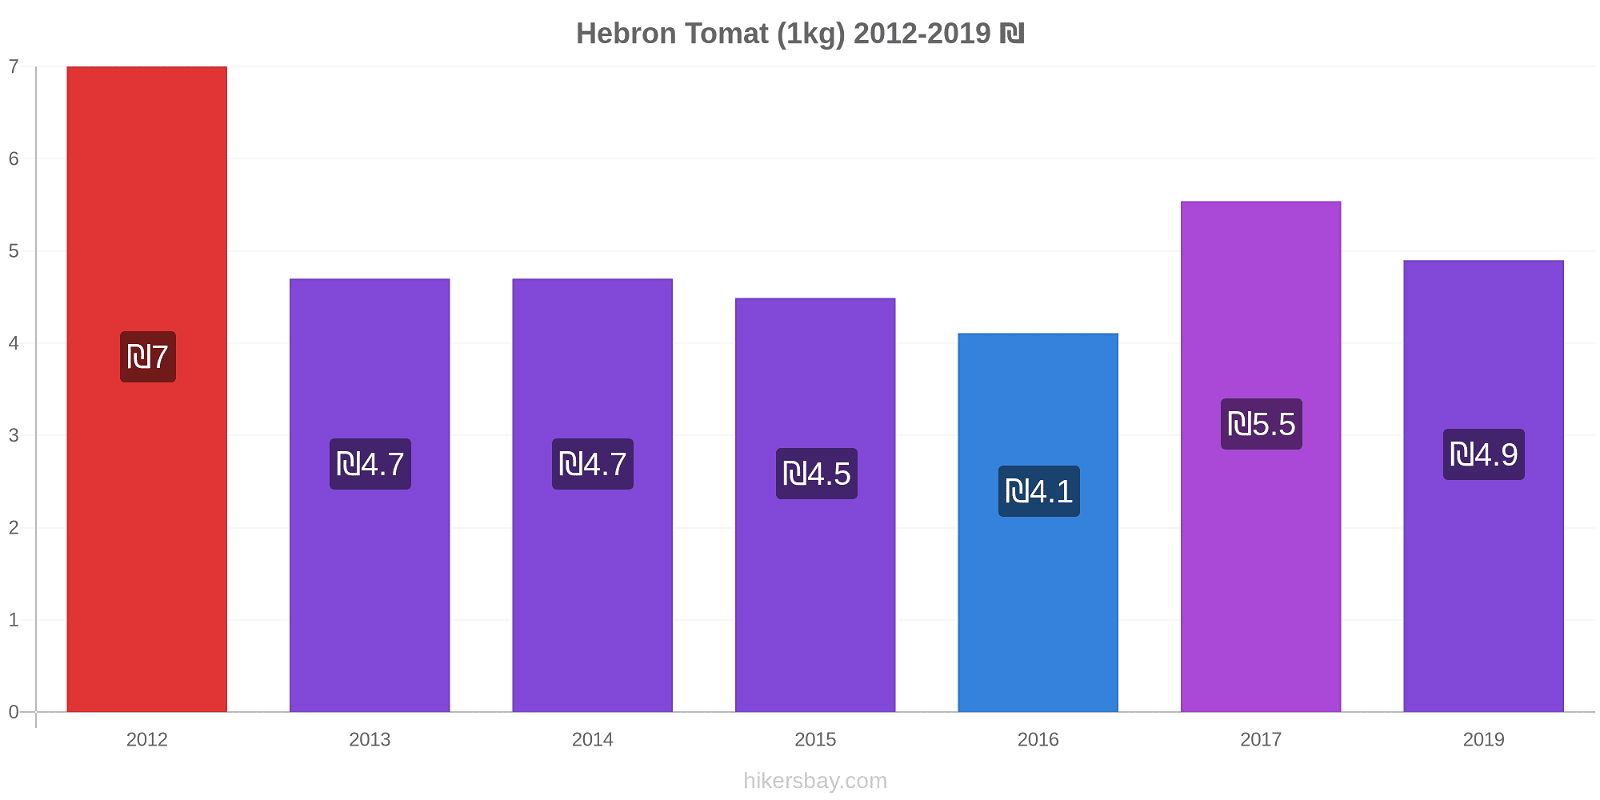 Hebron prisændringer Tomat (1kg) hikersbay.com